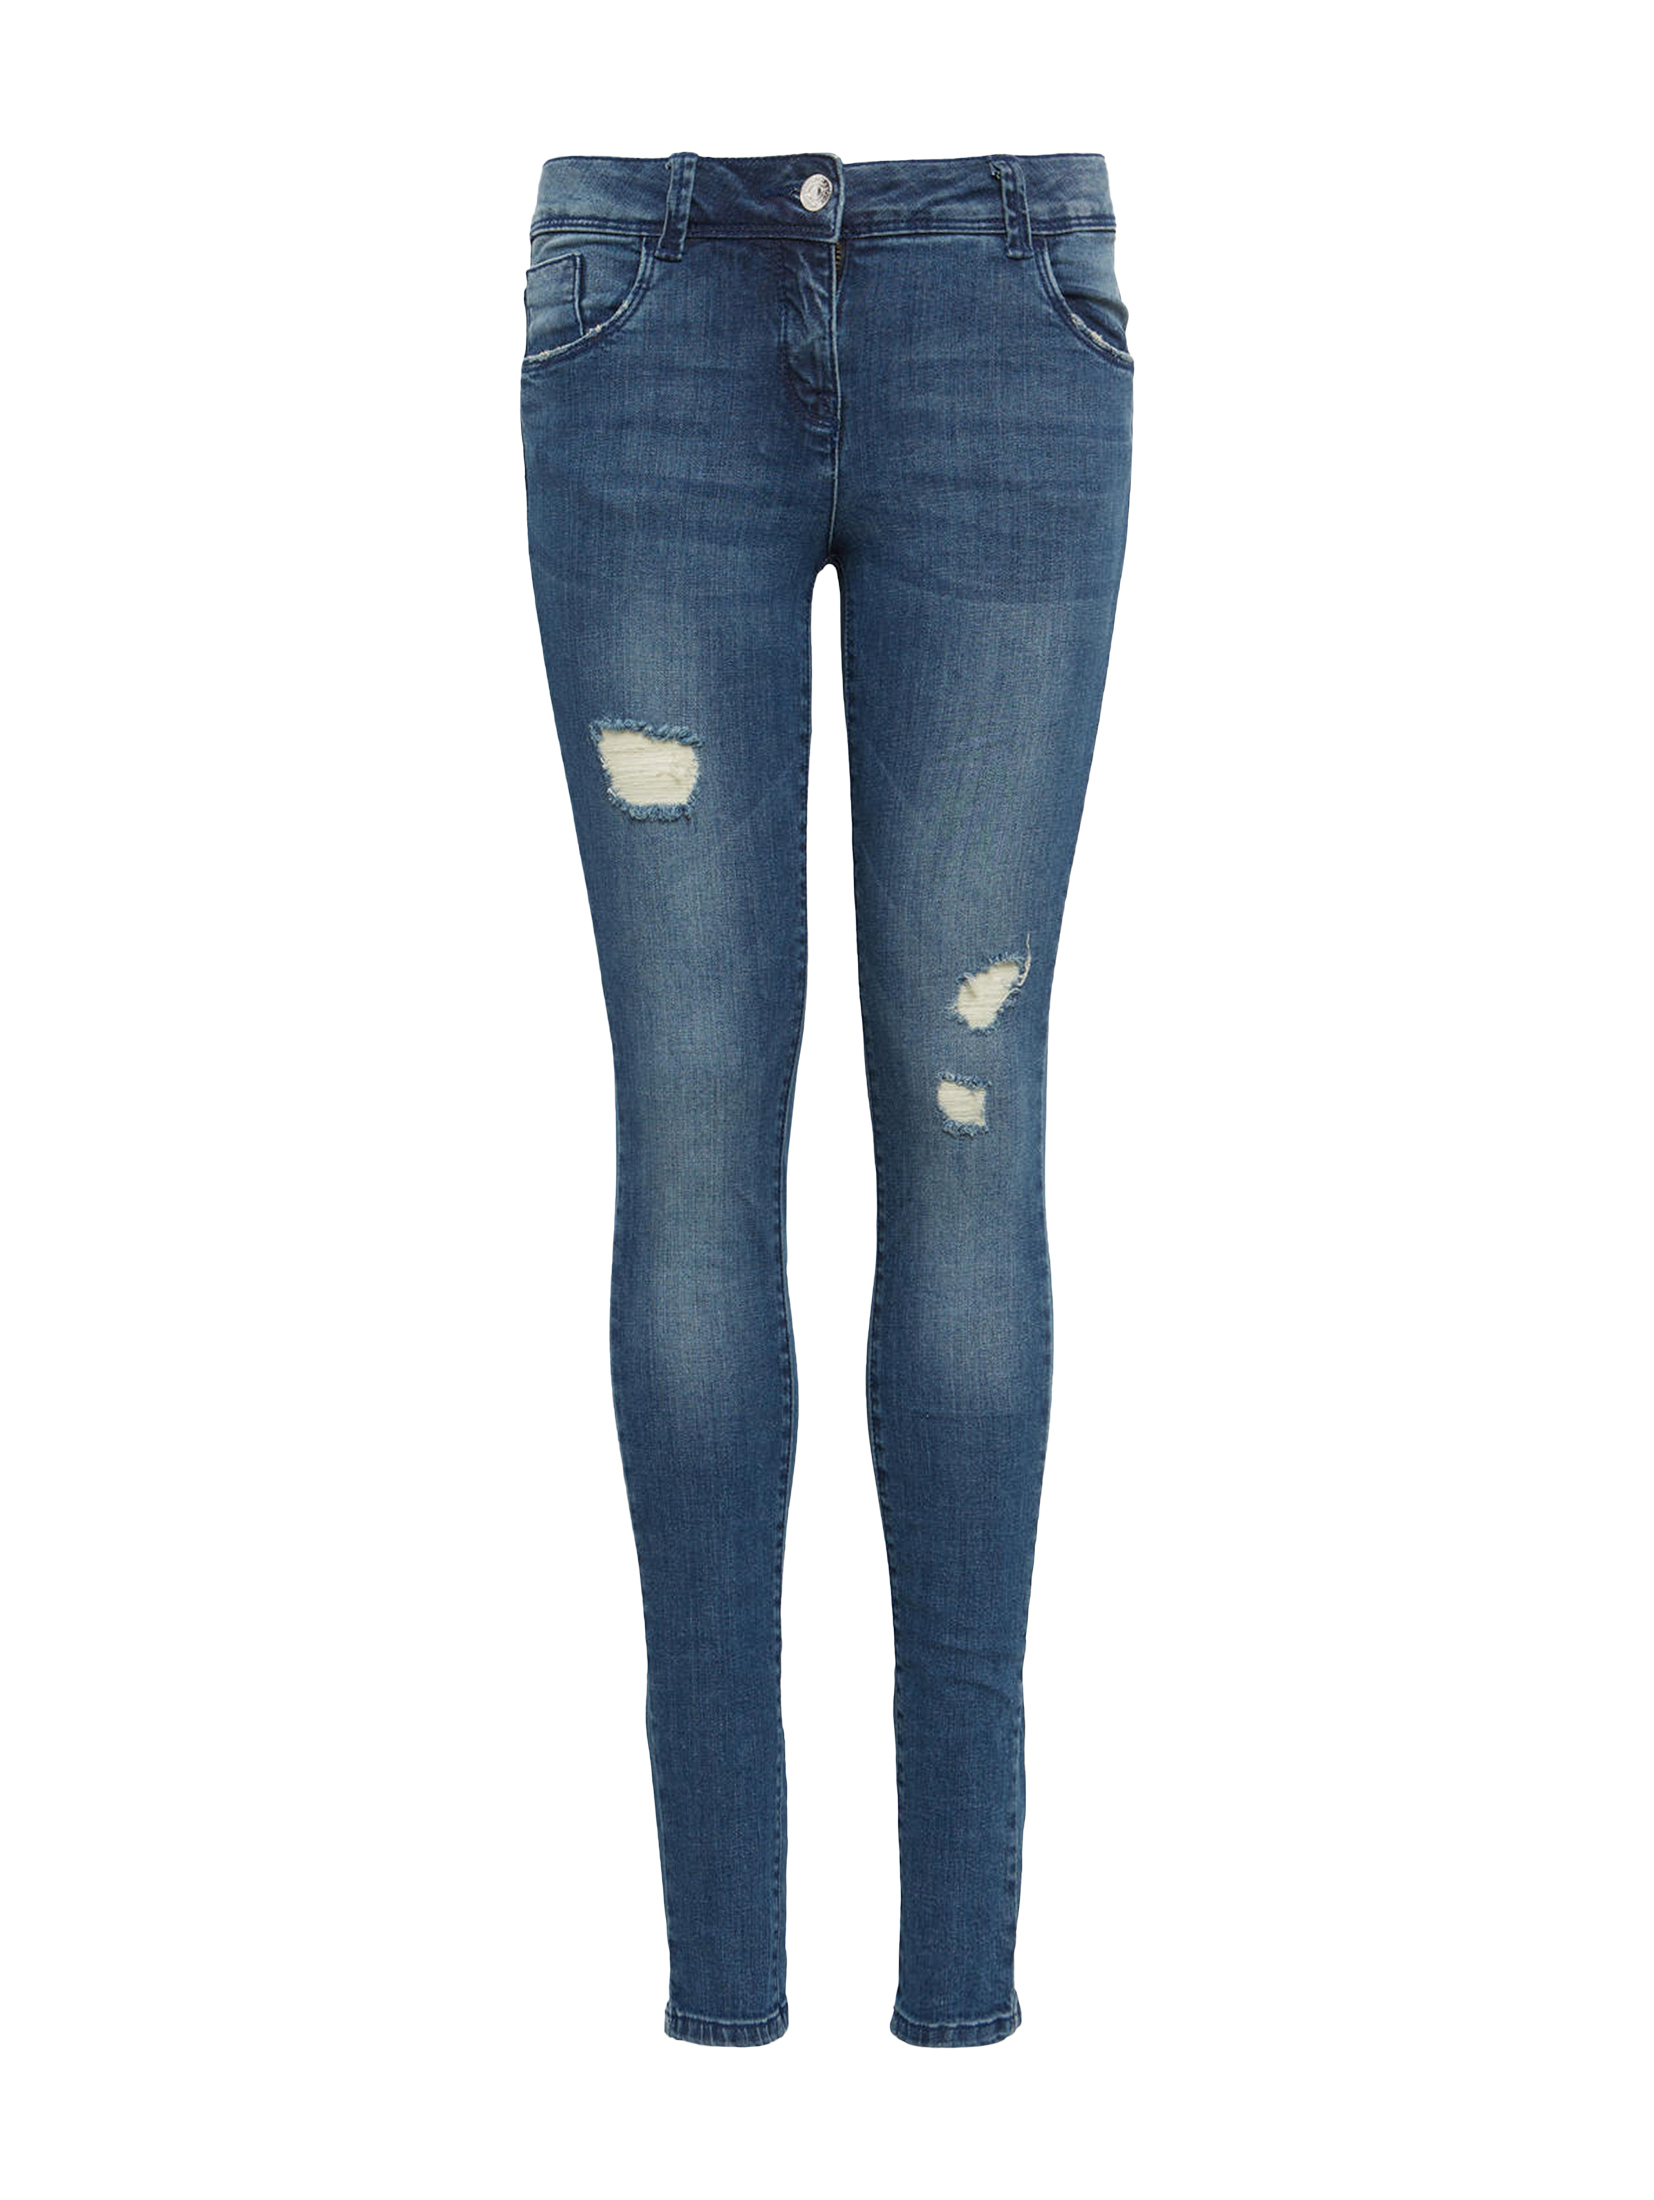 Jeans uni long  LINLY, stone blue denim-denim